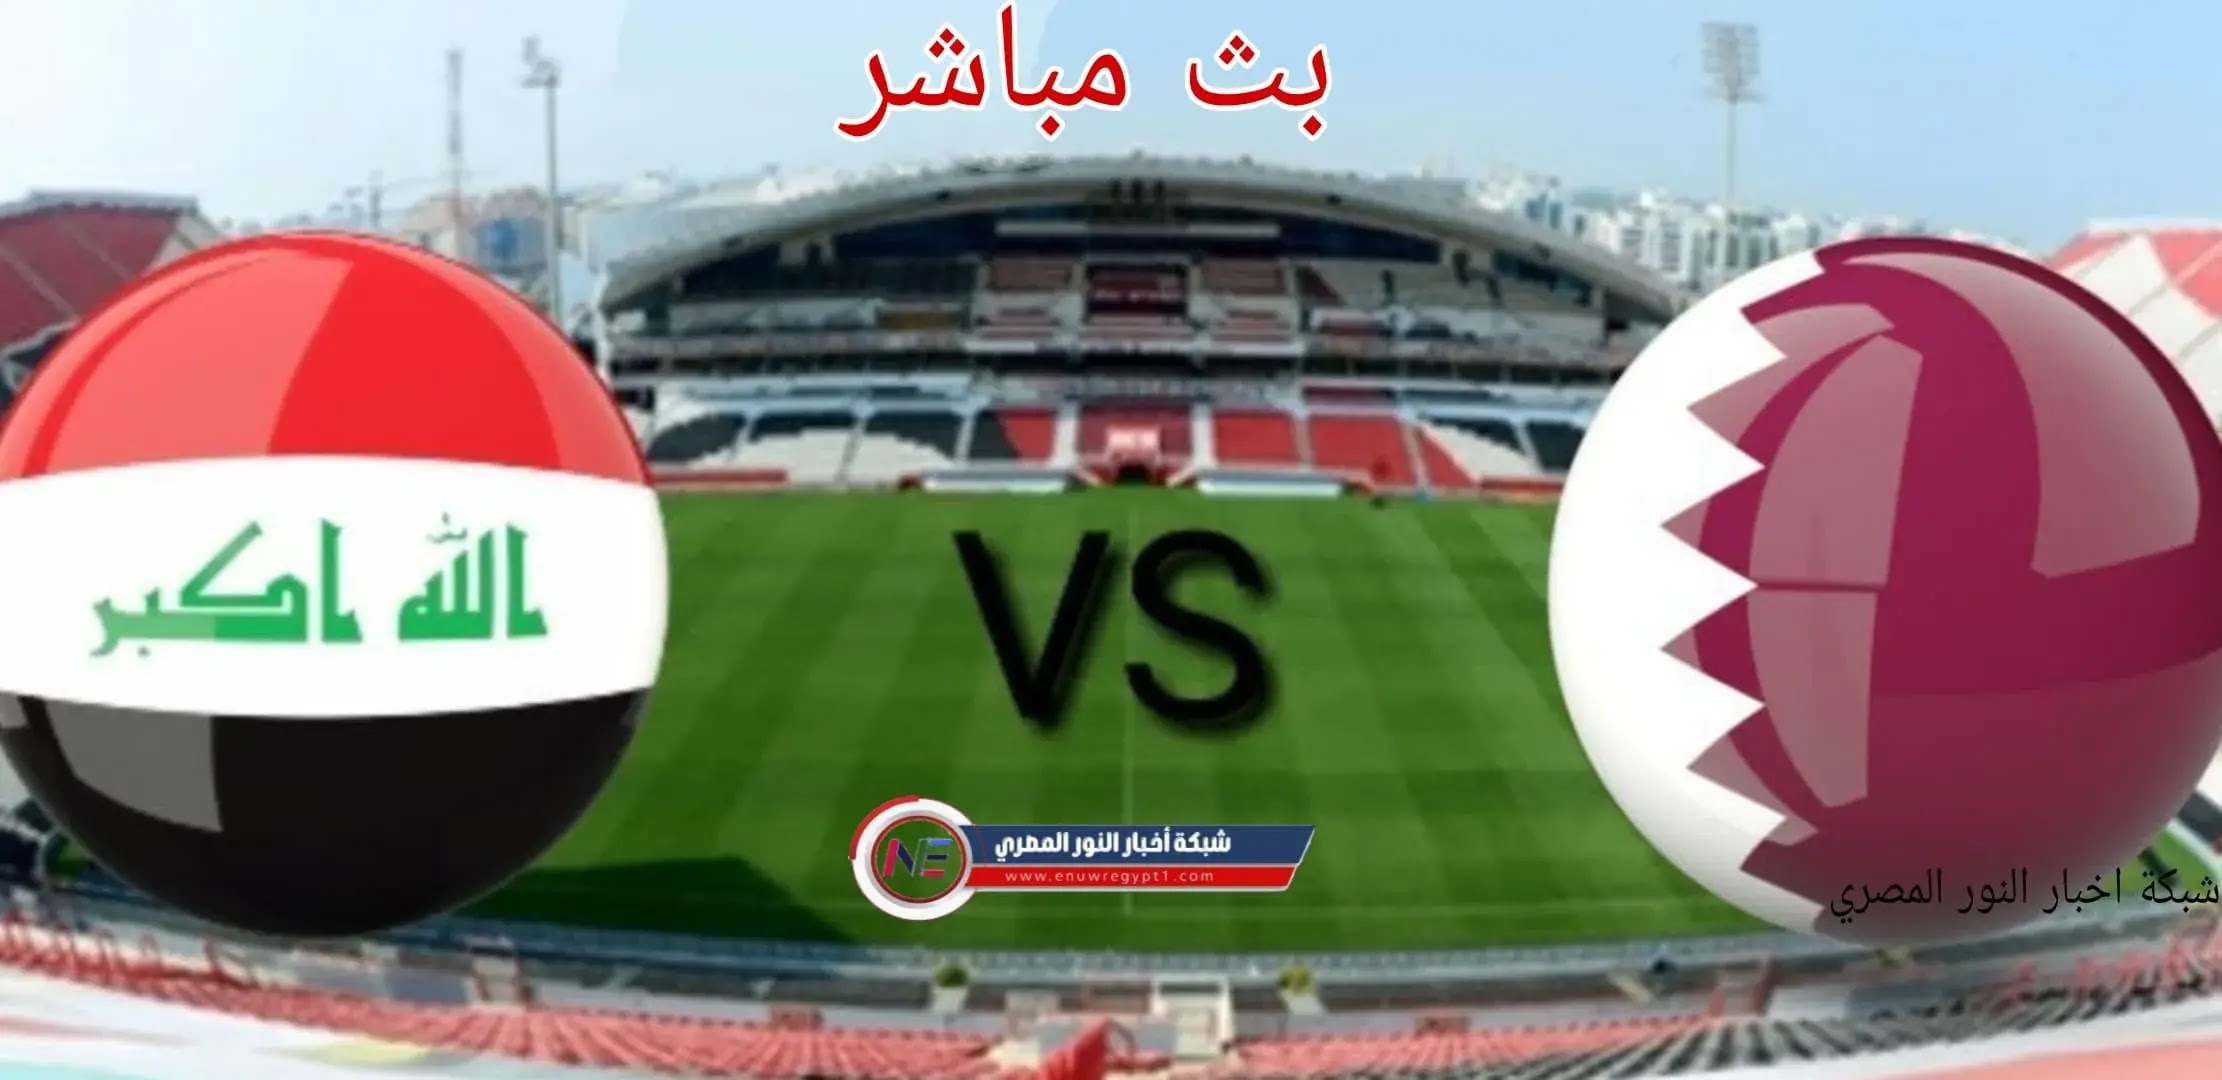 نتيجة واهداف مباراة العراق و قطر اليوم 06-12-2021 في كأس العرب يلا شوت